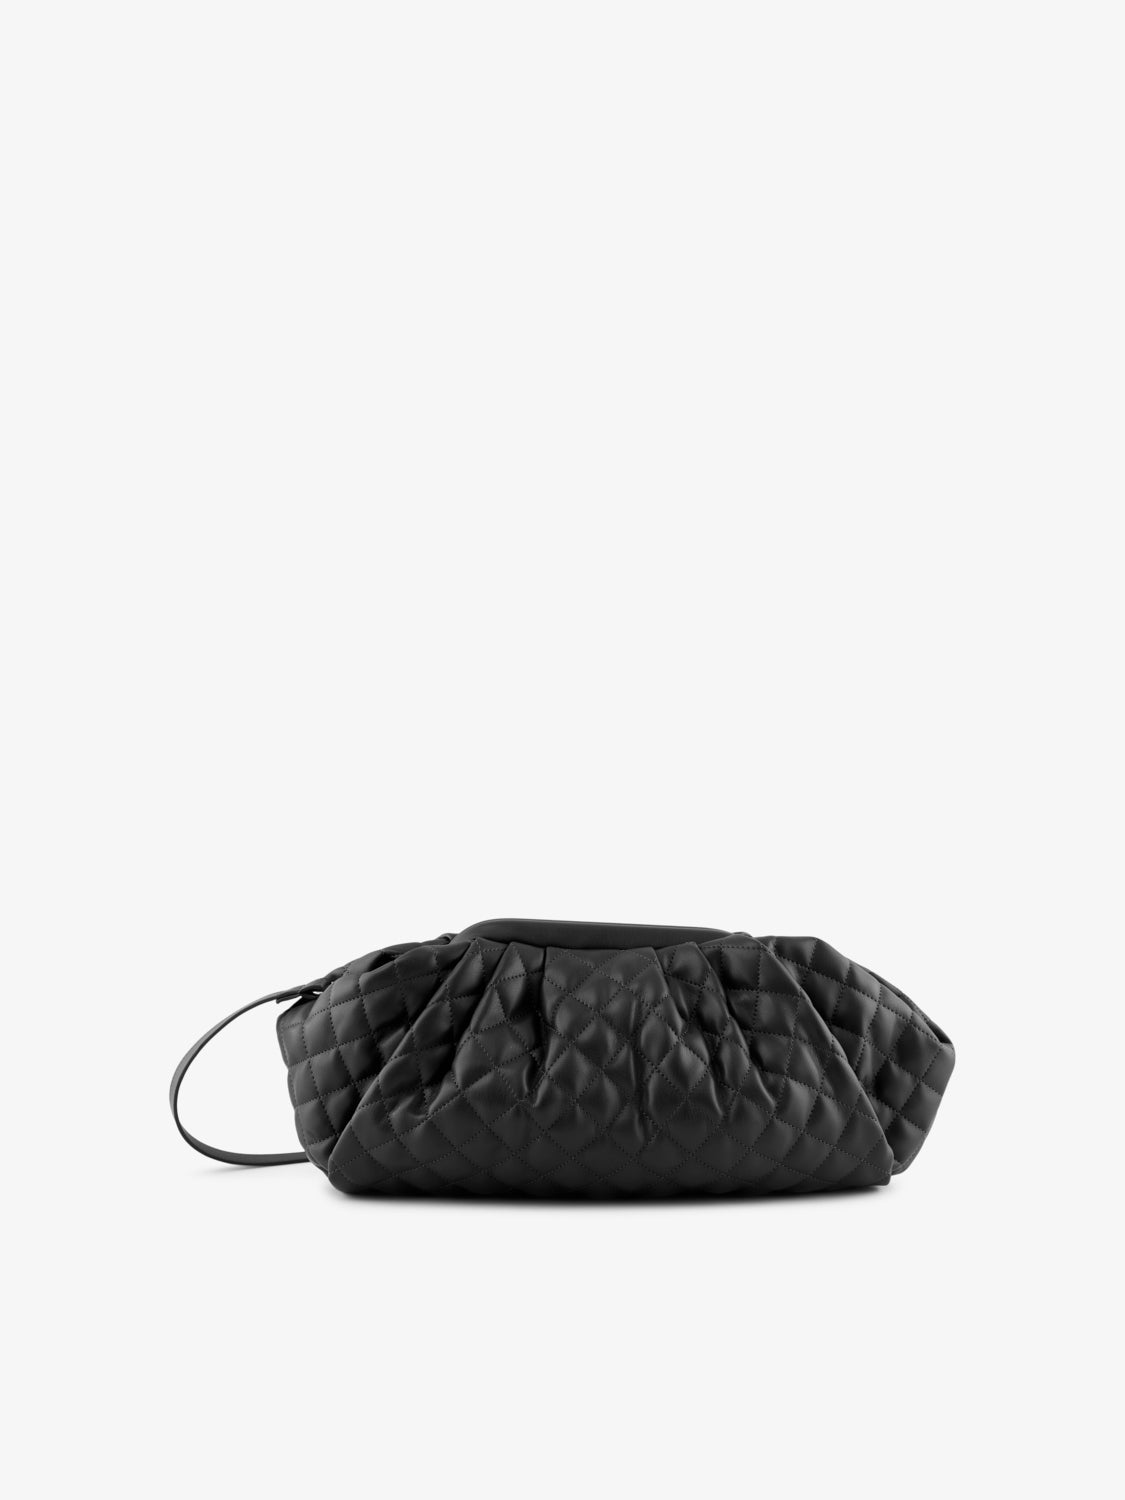 PCEVY Handbag - Black